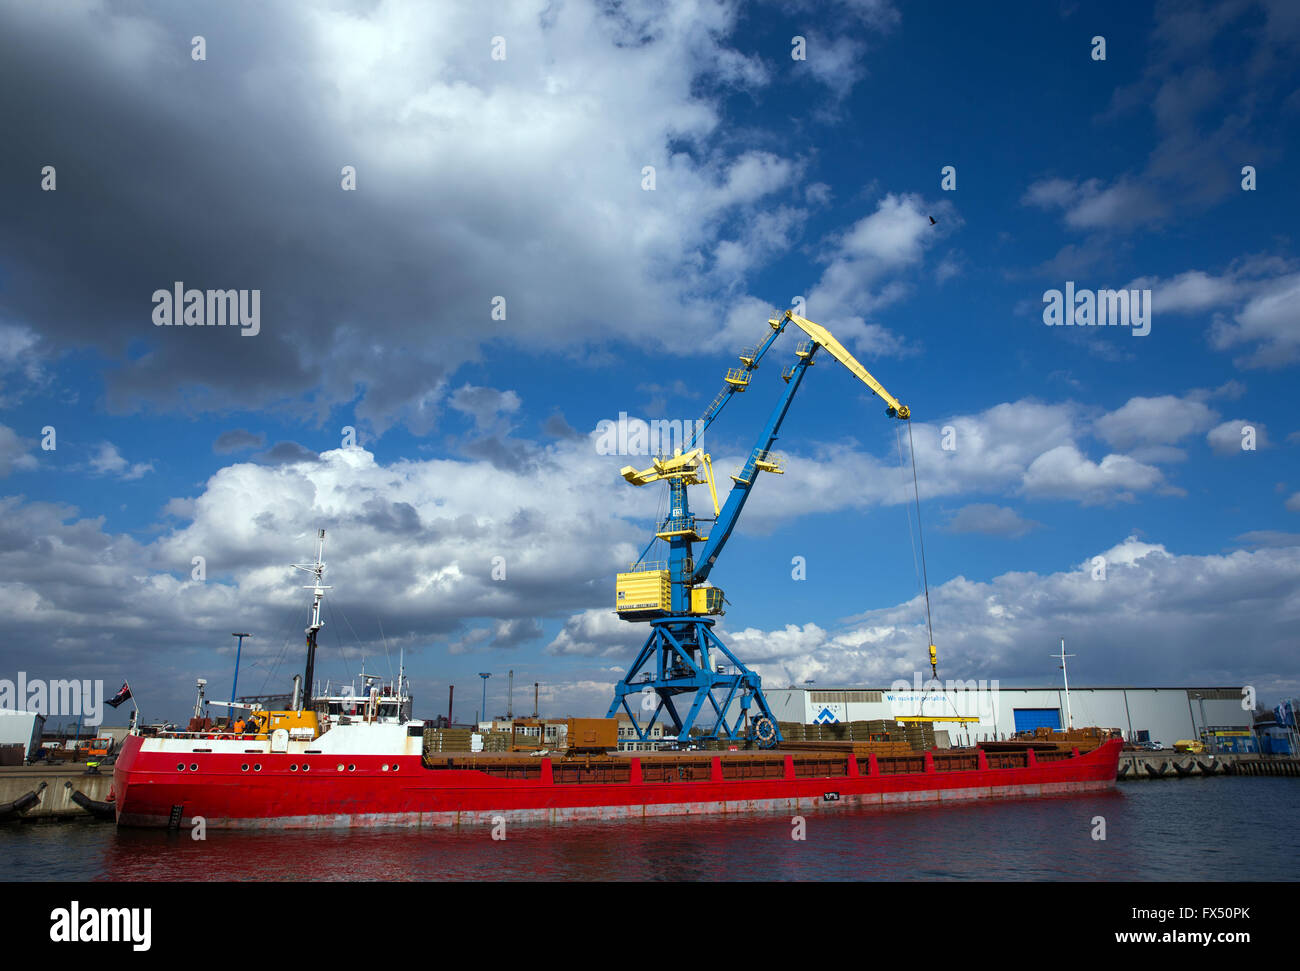 Wismar, Alemania. 07 abr, 2016. La coaster es descargada en el puerto marítimo de Wismar, Alemania, 07 de abril de 2016. El volumen de transbordo en los puertos del estado alemán de Mecklemburgo-Pomerania Occidental ha aumentado en 2015. Wismar encabezó la lista de puertos dentro del estado con una tasa de crecimiento del 10,2% en comparación con 2014. Fotografía: JENS BUETTNER/dpa/Alamy Live News Foto de stock